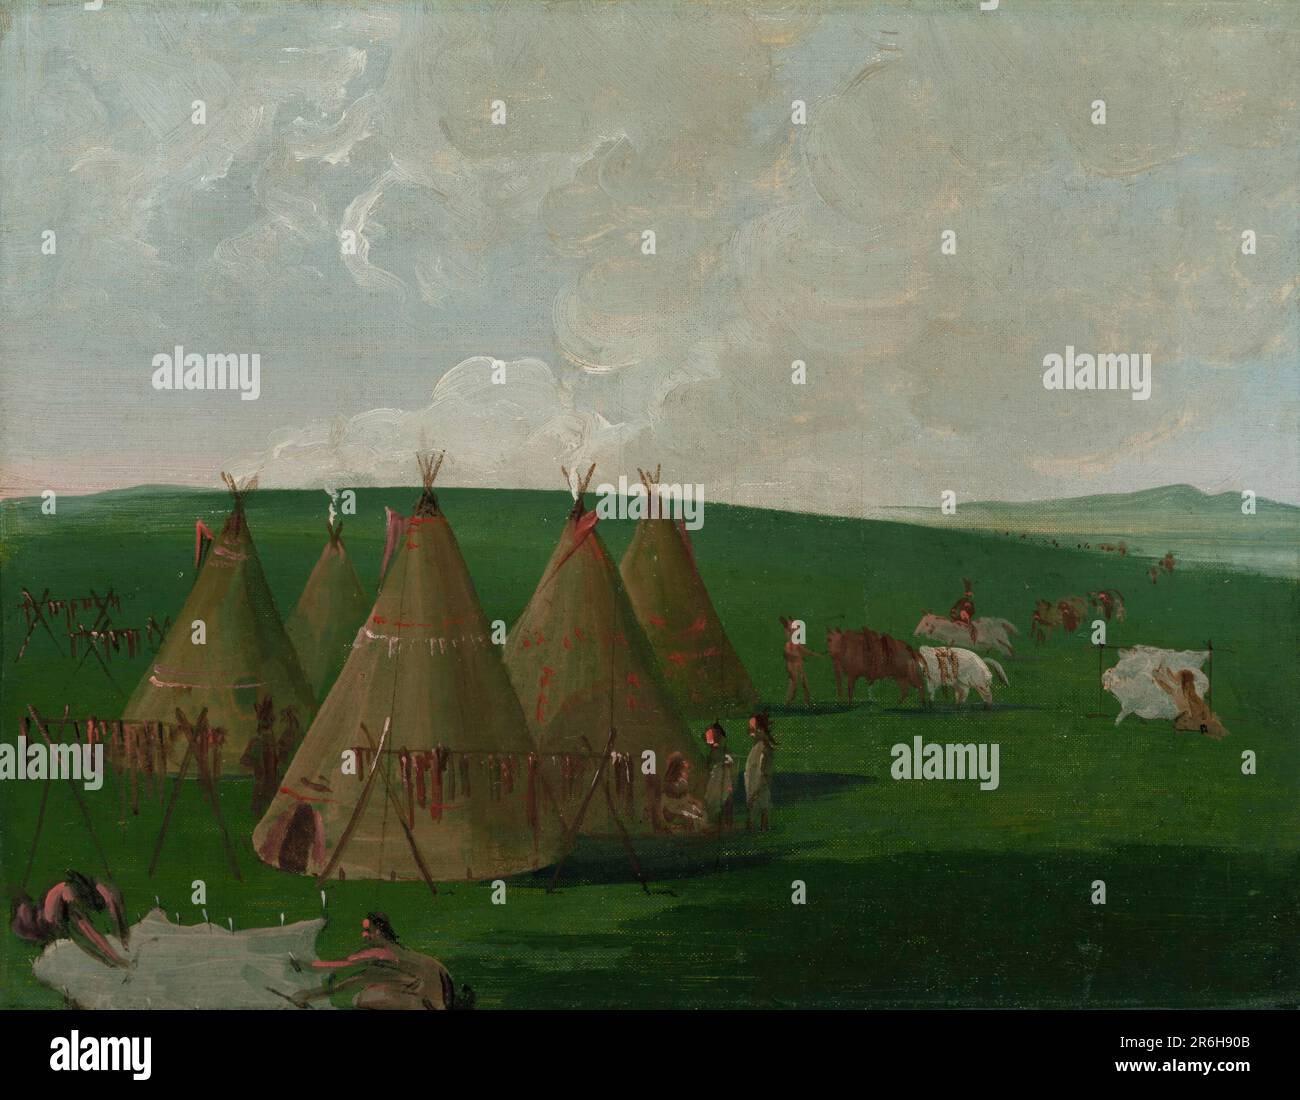 Sioux, das auf dem Upper Missouri liegt, frisiert Büffelfleisch und Bademäntel. Öl auf Segeltuch. Datum: 1832. Museum: Smithsonian American Art Museum. Stockfoto